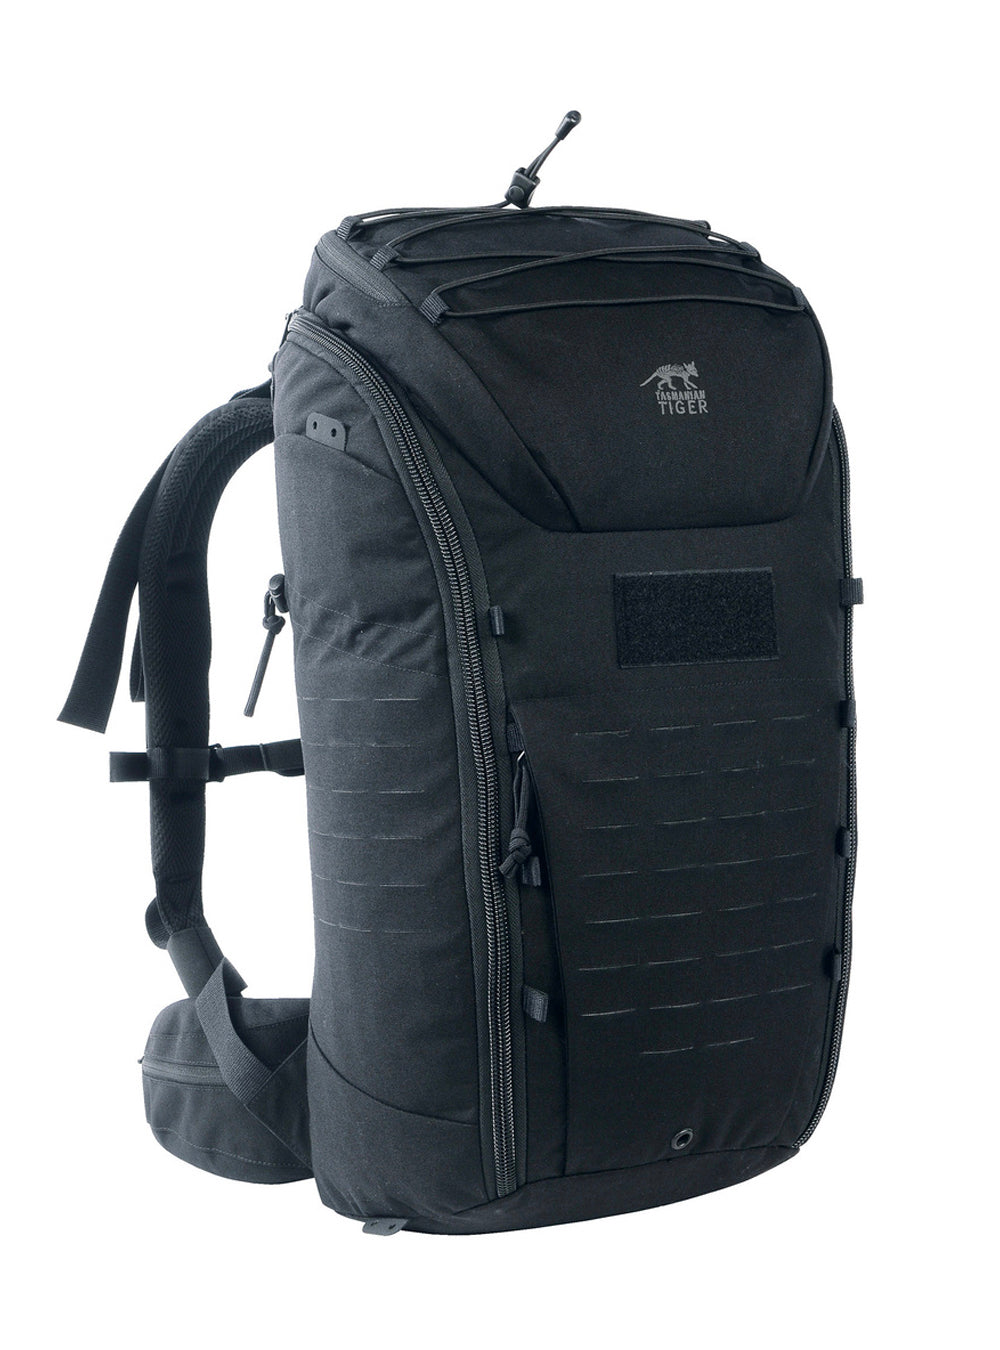 SALE - Tasmanian Tiger Modular Backpack Pack 30